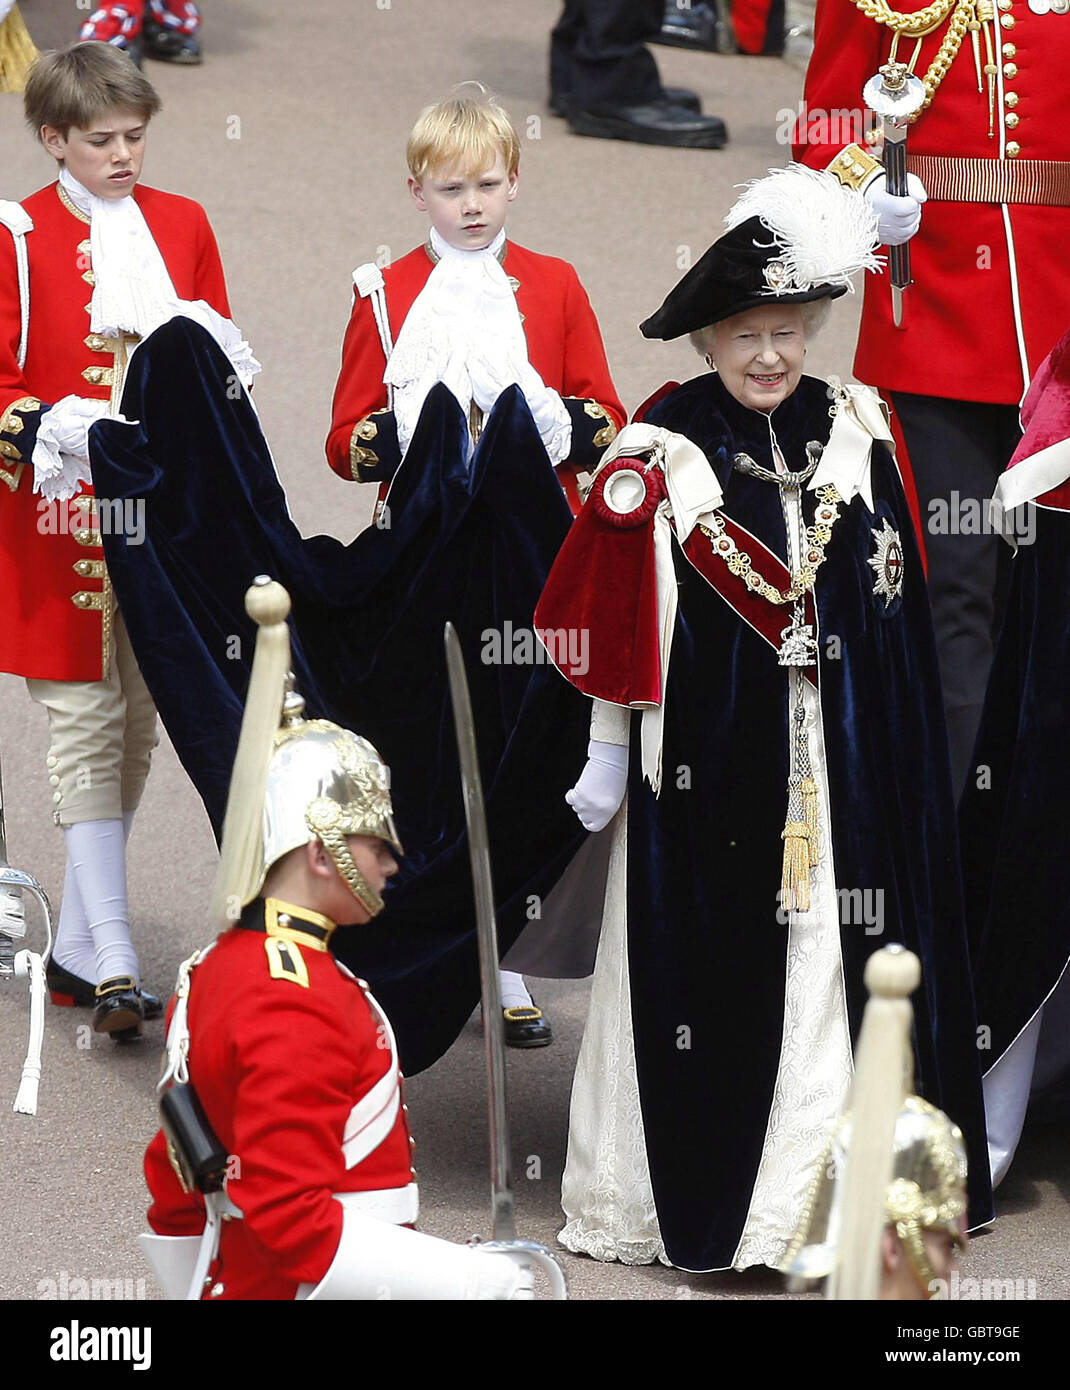 La Reina Isabel II de Gran Bretaña procesa para asistir a la Orden del Servicio de la Garter en Windsor. Foto de stock